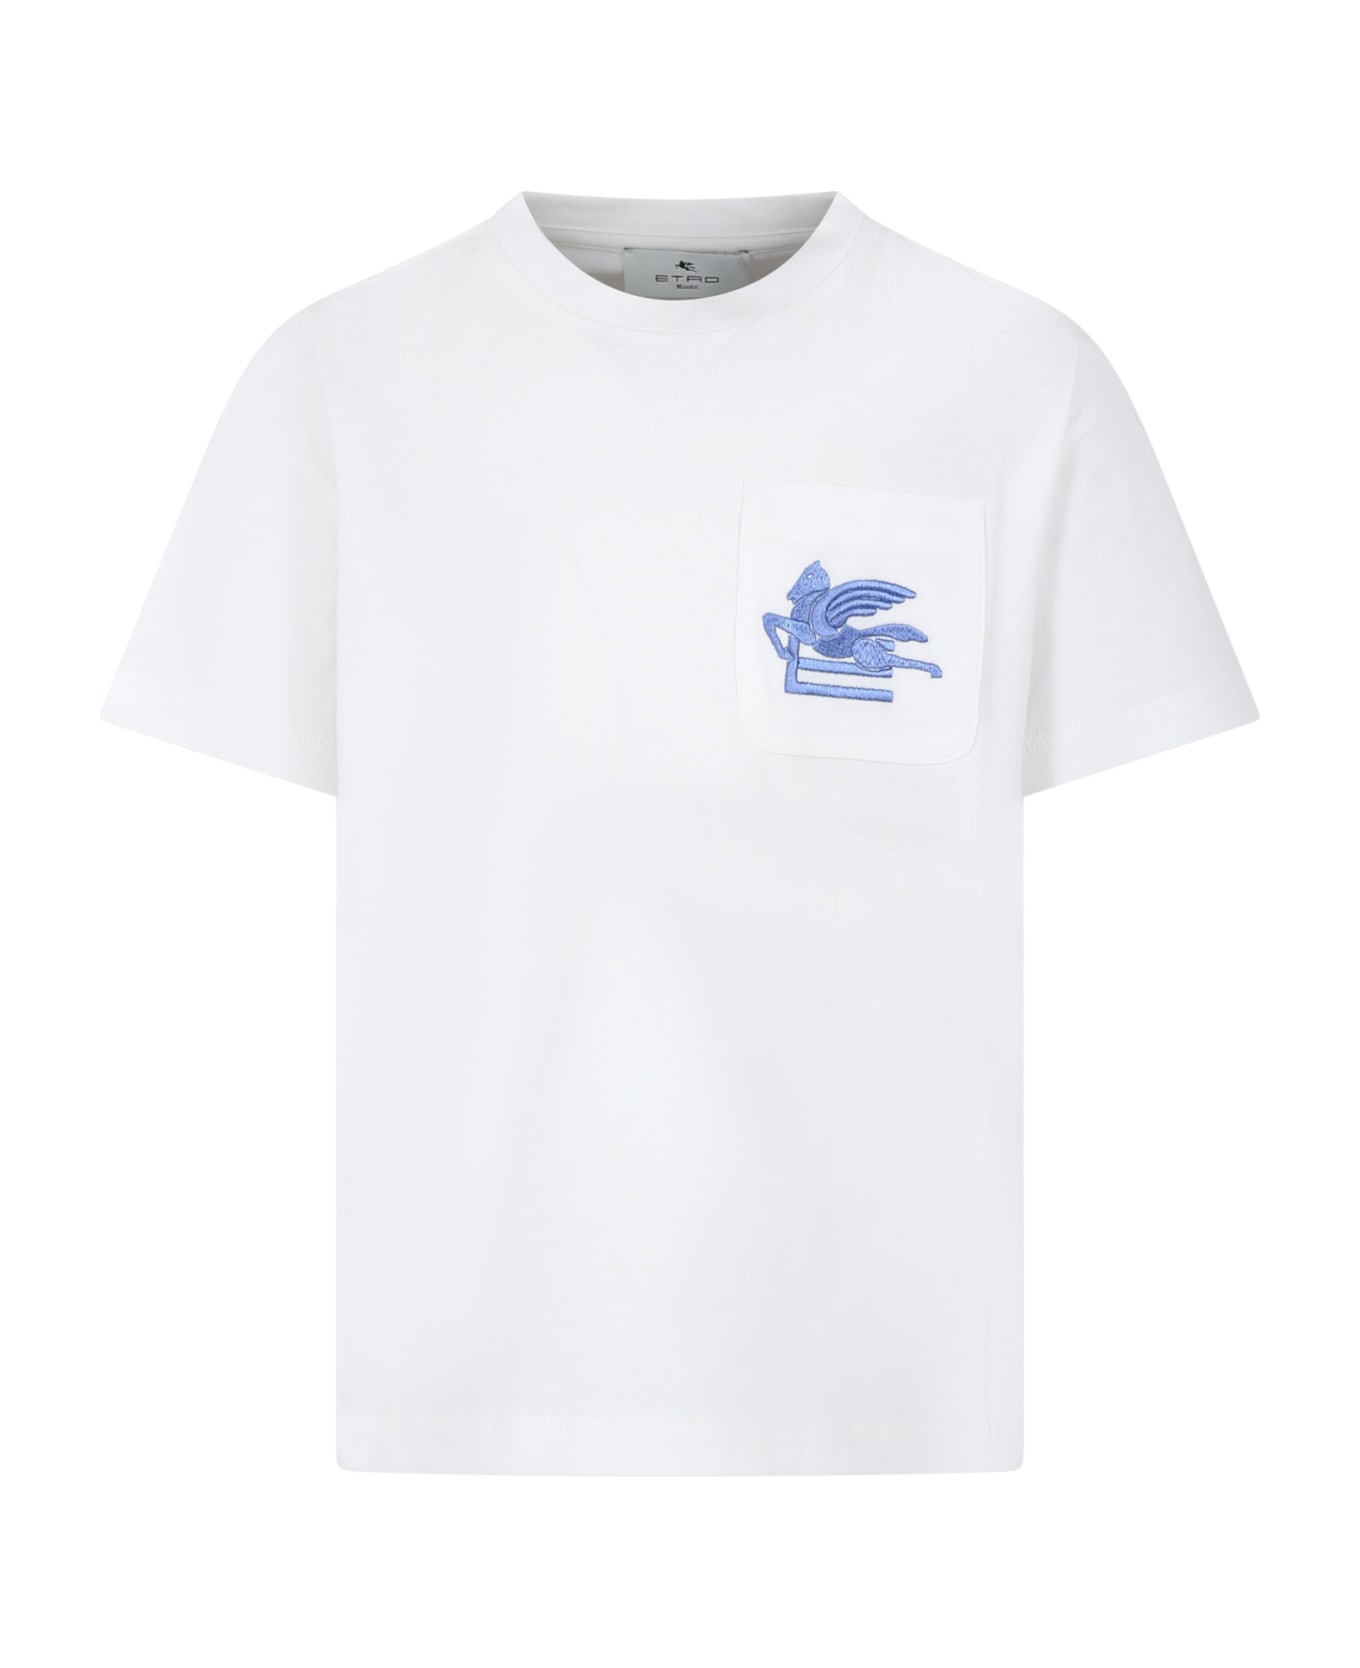 Etro White T-shirt For Kids With Iconic Pegasus - Az